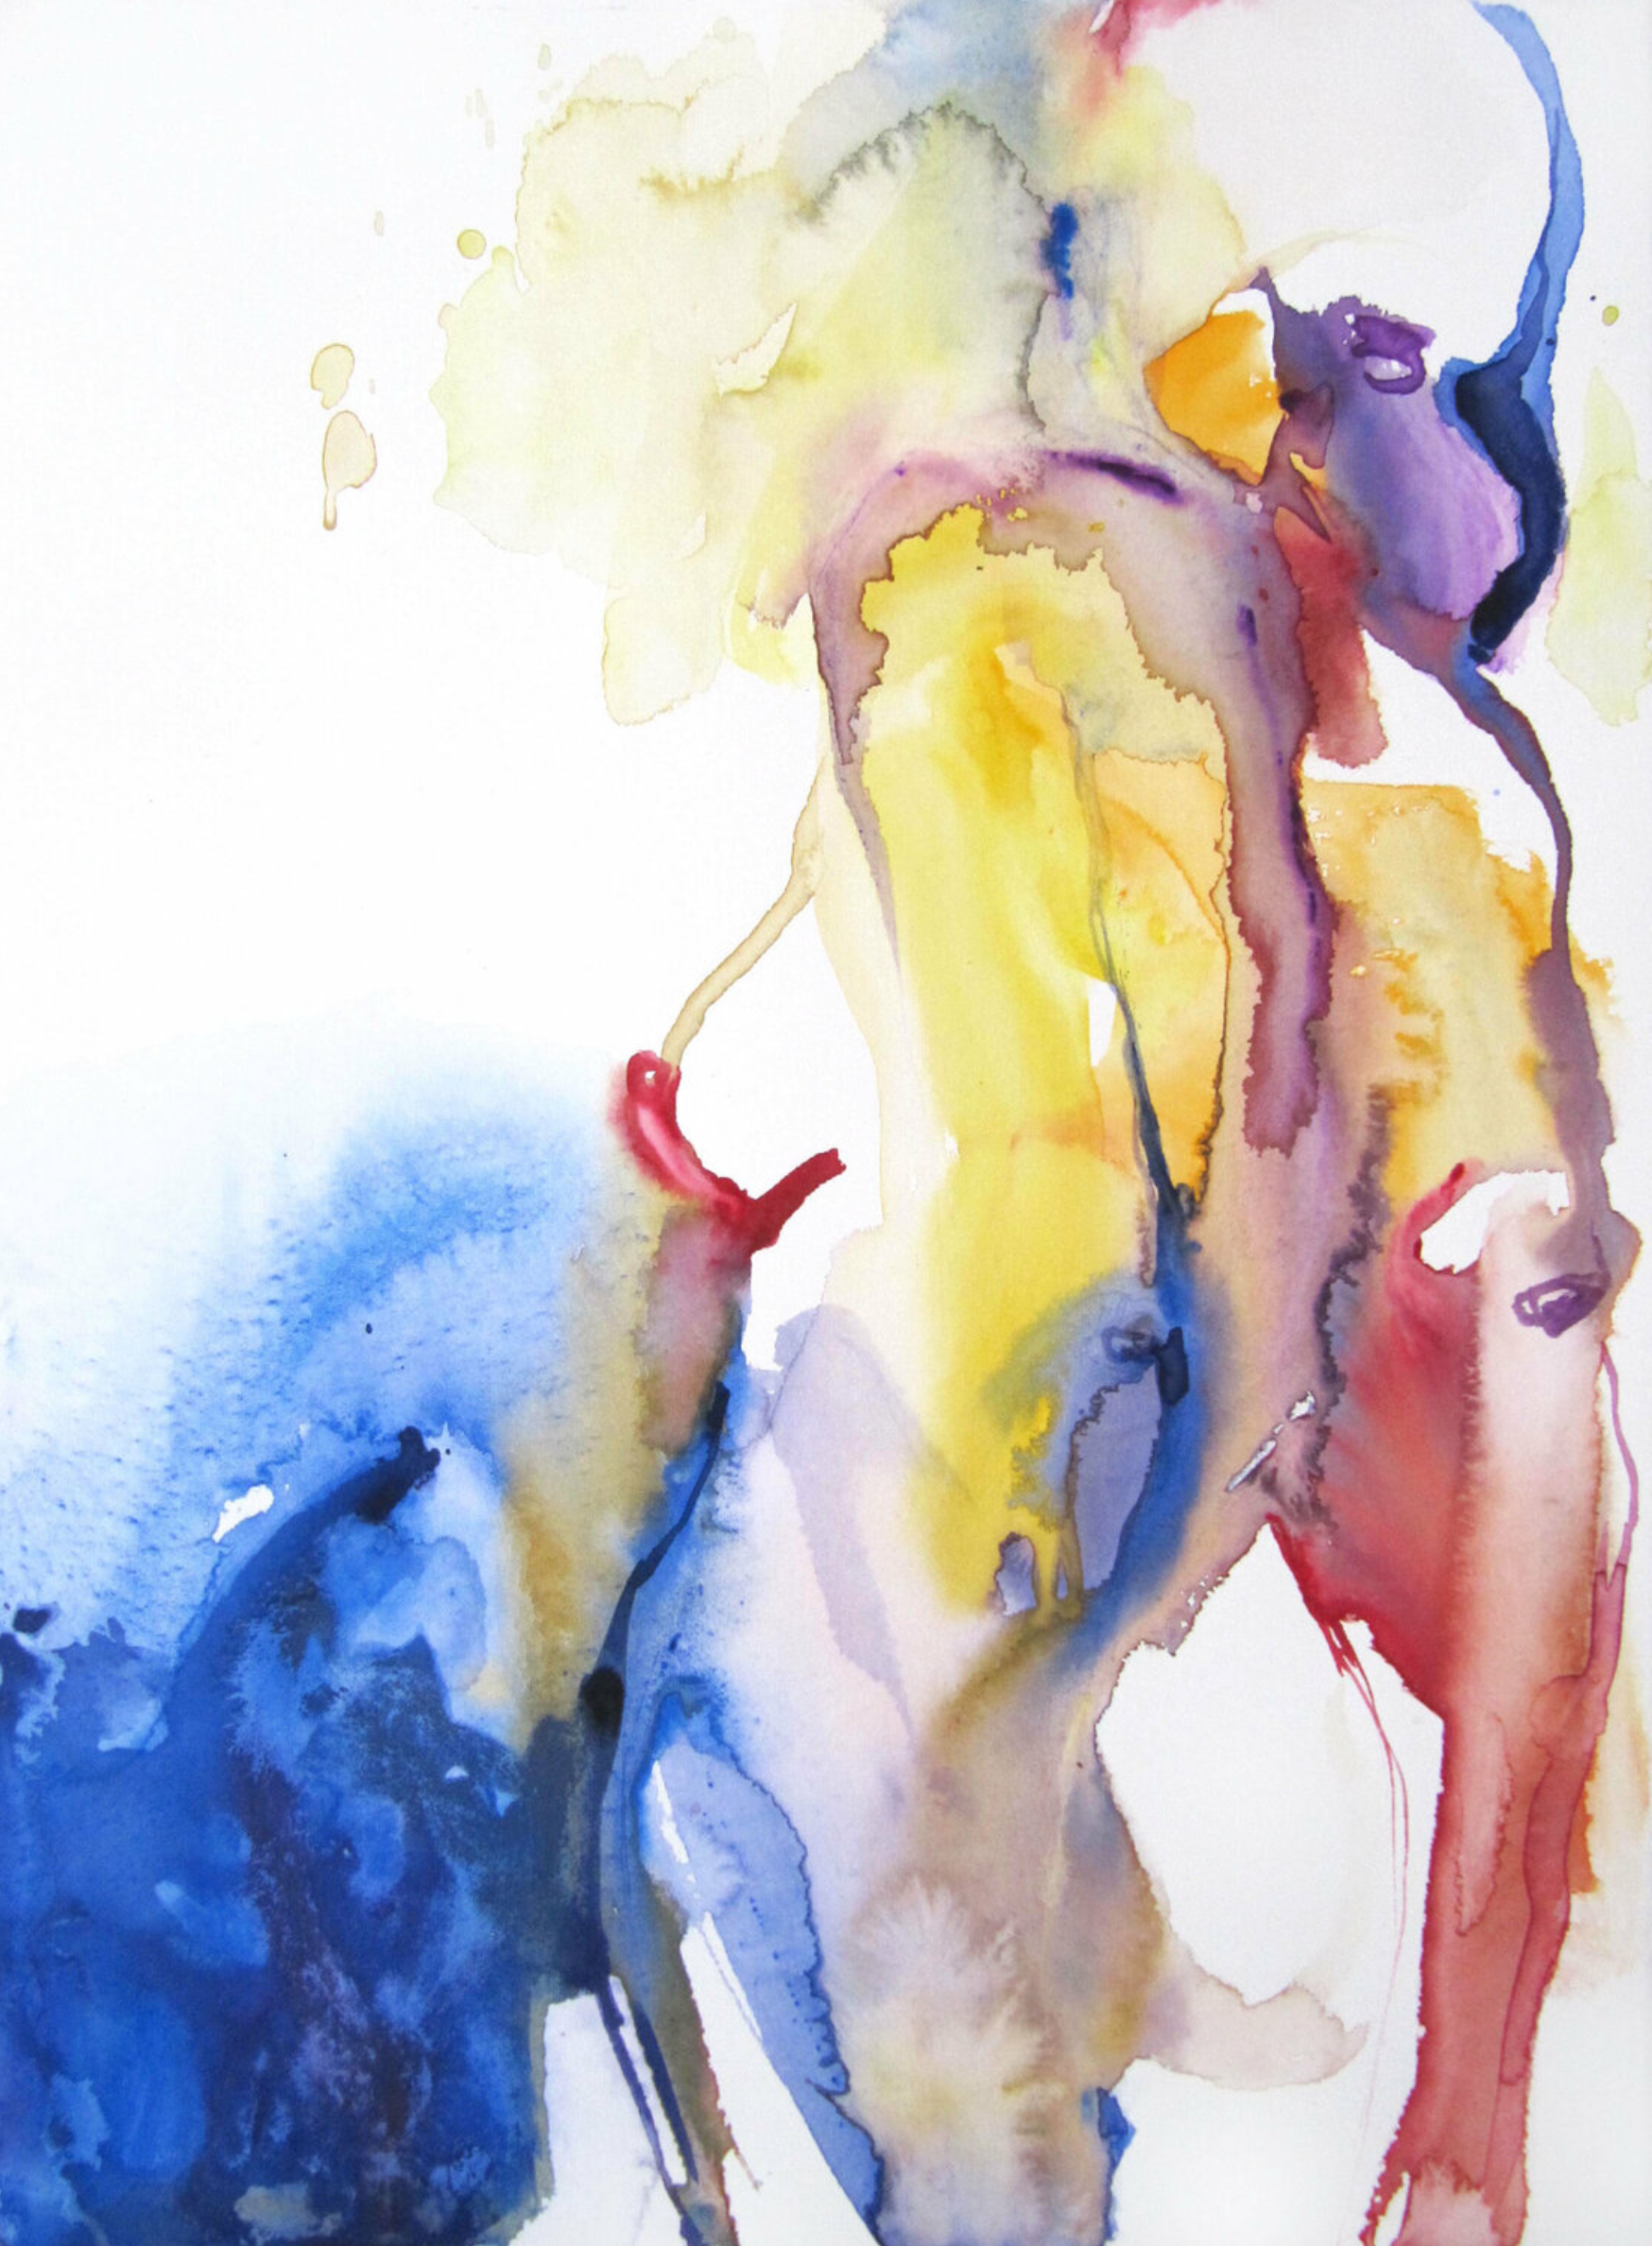 Vers la mer" de Sylvia Baldeva muestra un desnudo pintado en acuarela, semi-abstracto. Seducción, mujer, feminidad, mar, silueta, cuerpo femenino, expresionismo, acuarela sobre papel Canson®.